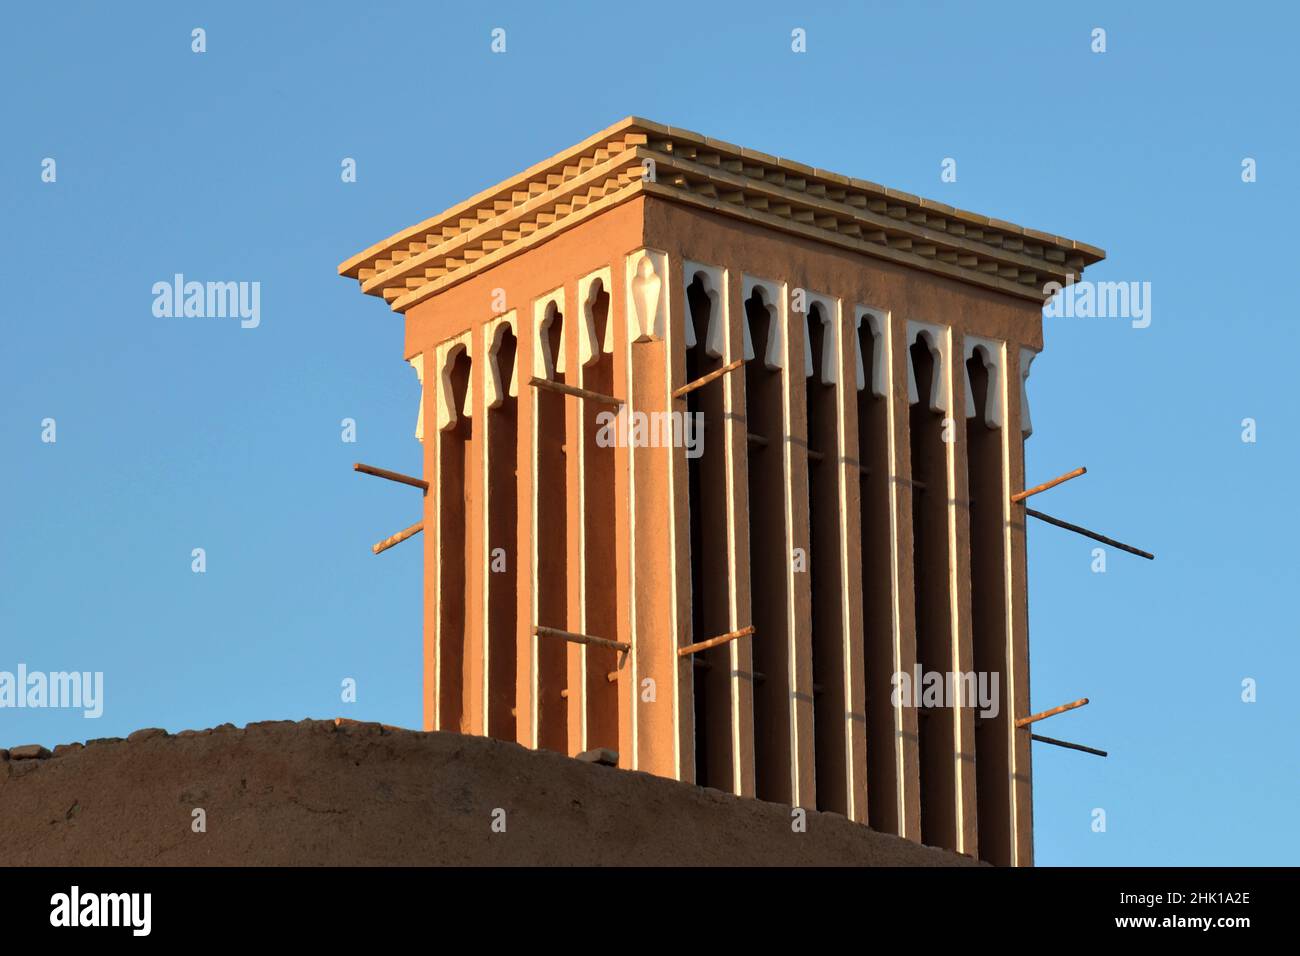 Badgir, una torre del vento sul tetto nell'antica città di Yazd in Iran, badgir è una caratteristica architettonica tradizionale persiana che crea venti naturali Foto Stock